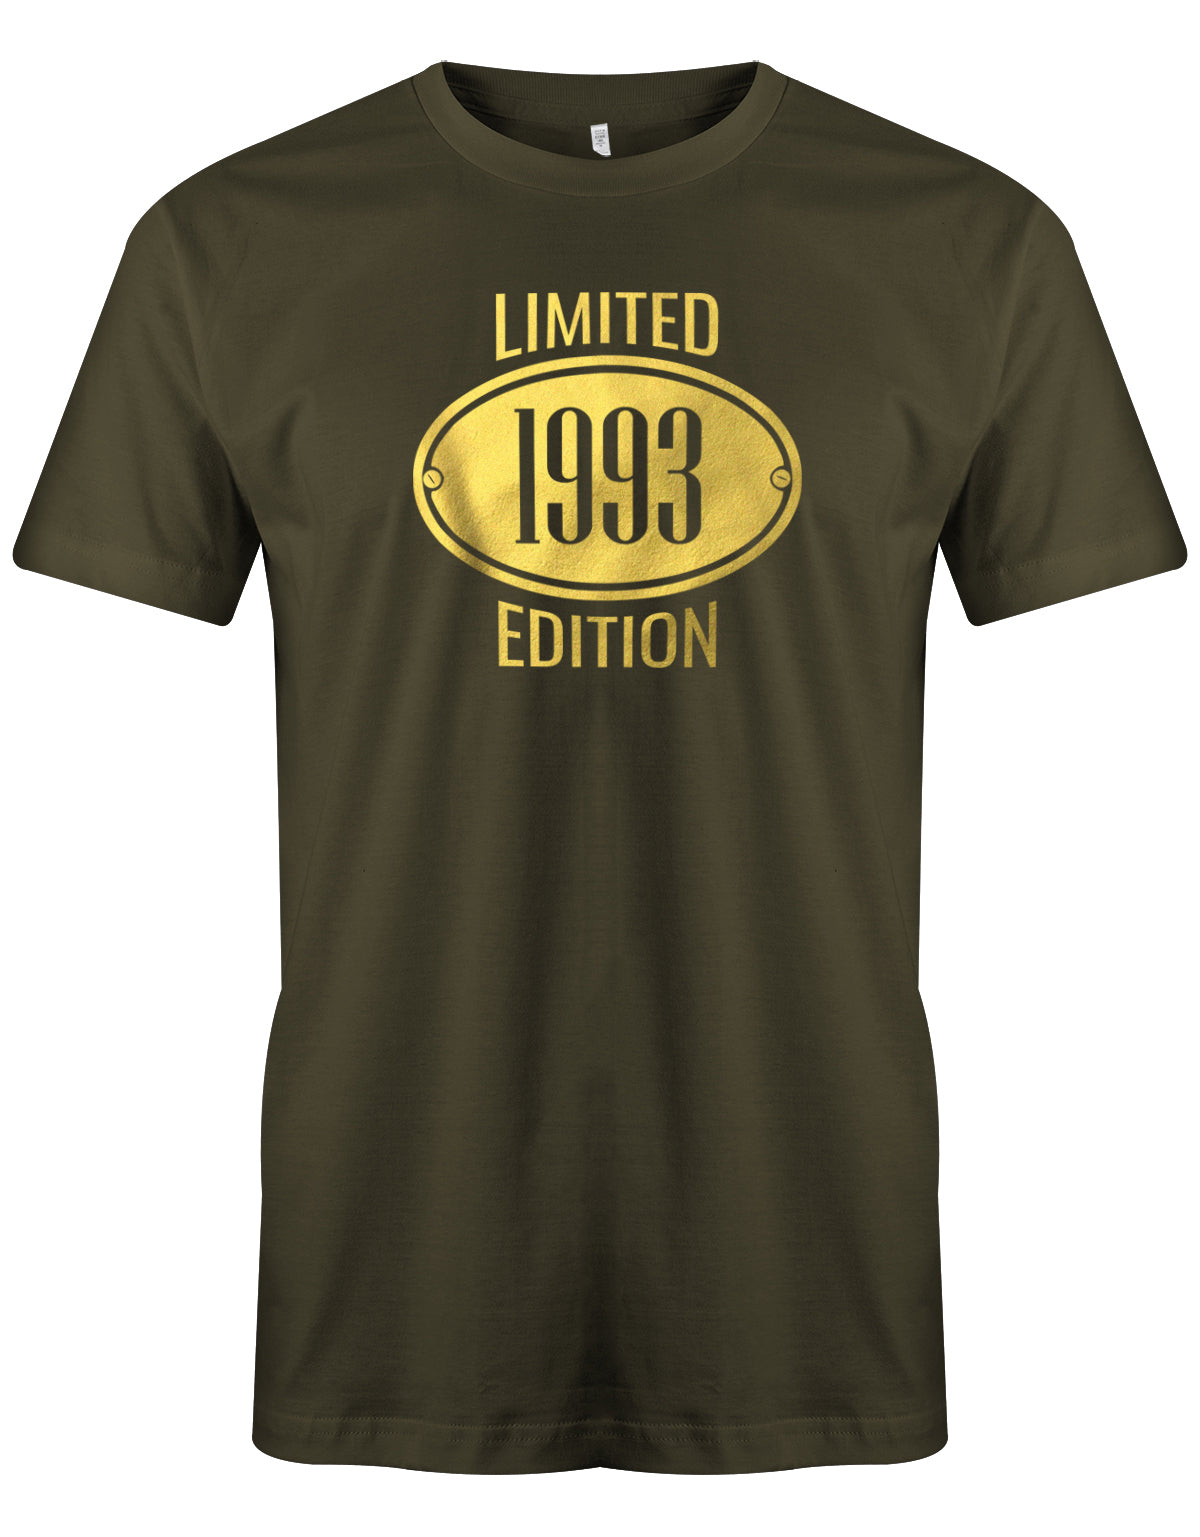 Limited Edition 1993 Gold - Jahrgang 1993 Geschenk Männer Shirt